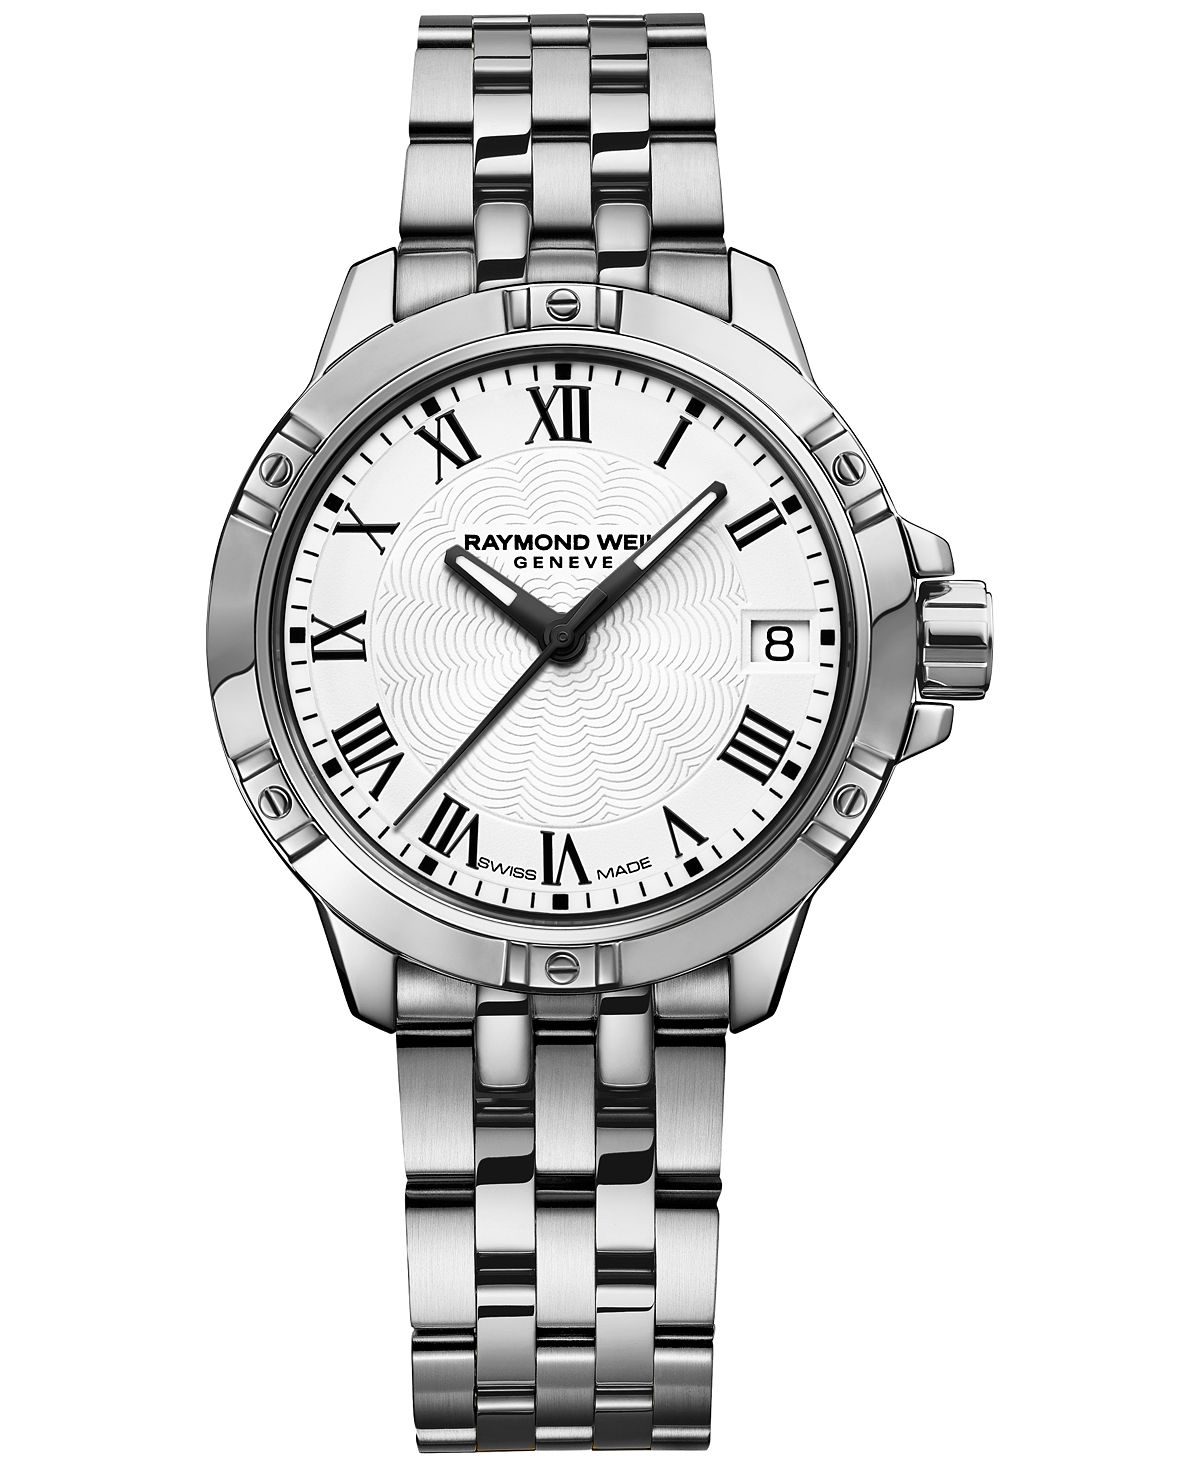 Швейцарские женские часы Tango с браслетом из нержавеющей стали, 30 мм 5960-ST-00300 Raymond Weil, серебро цена и фото